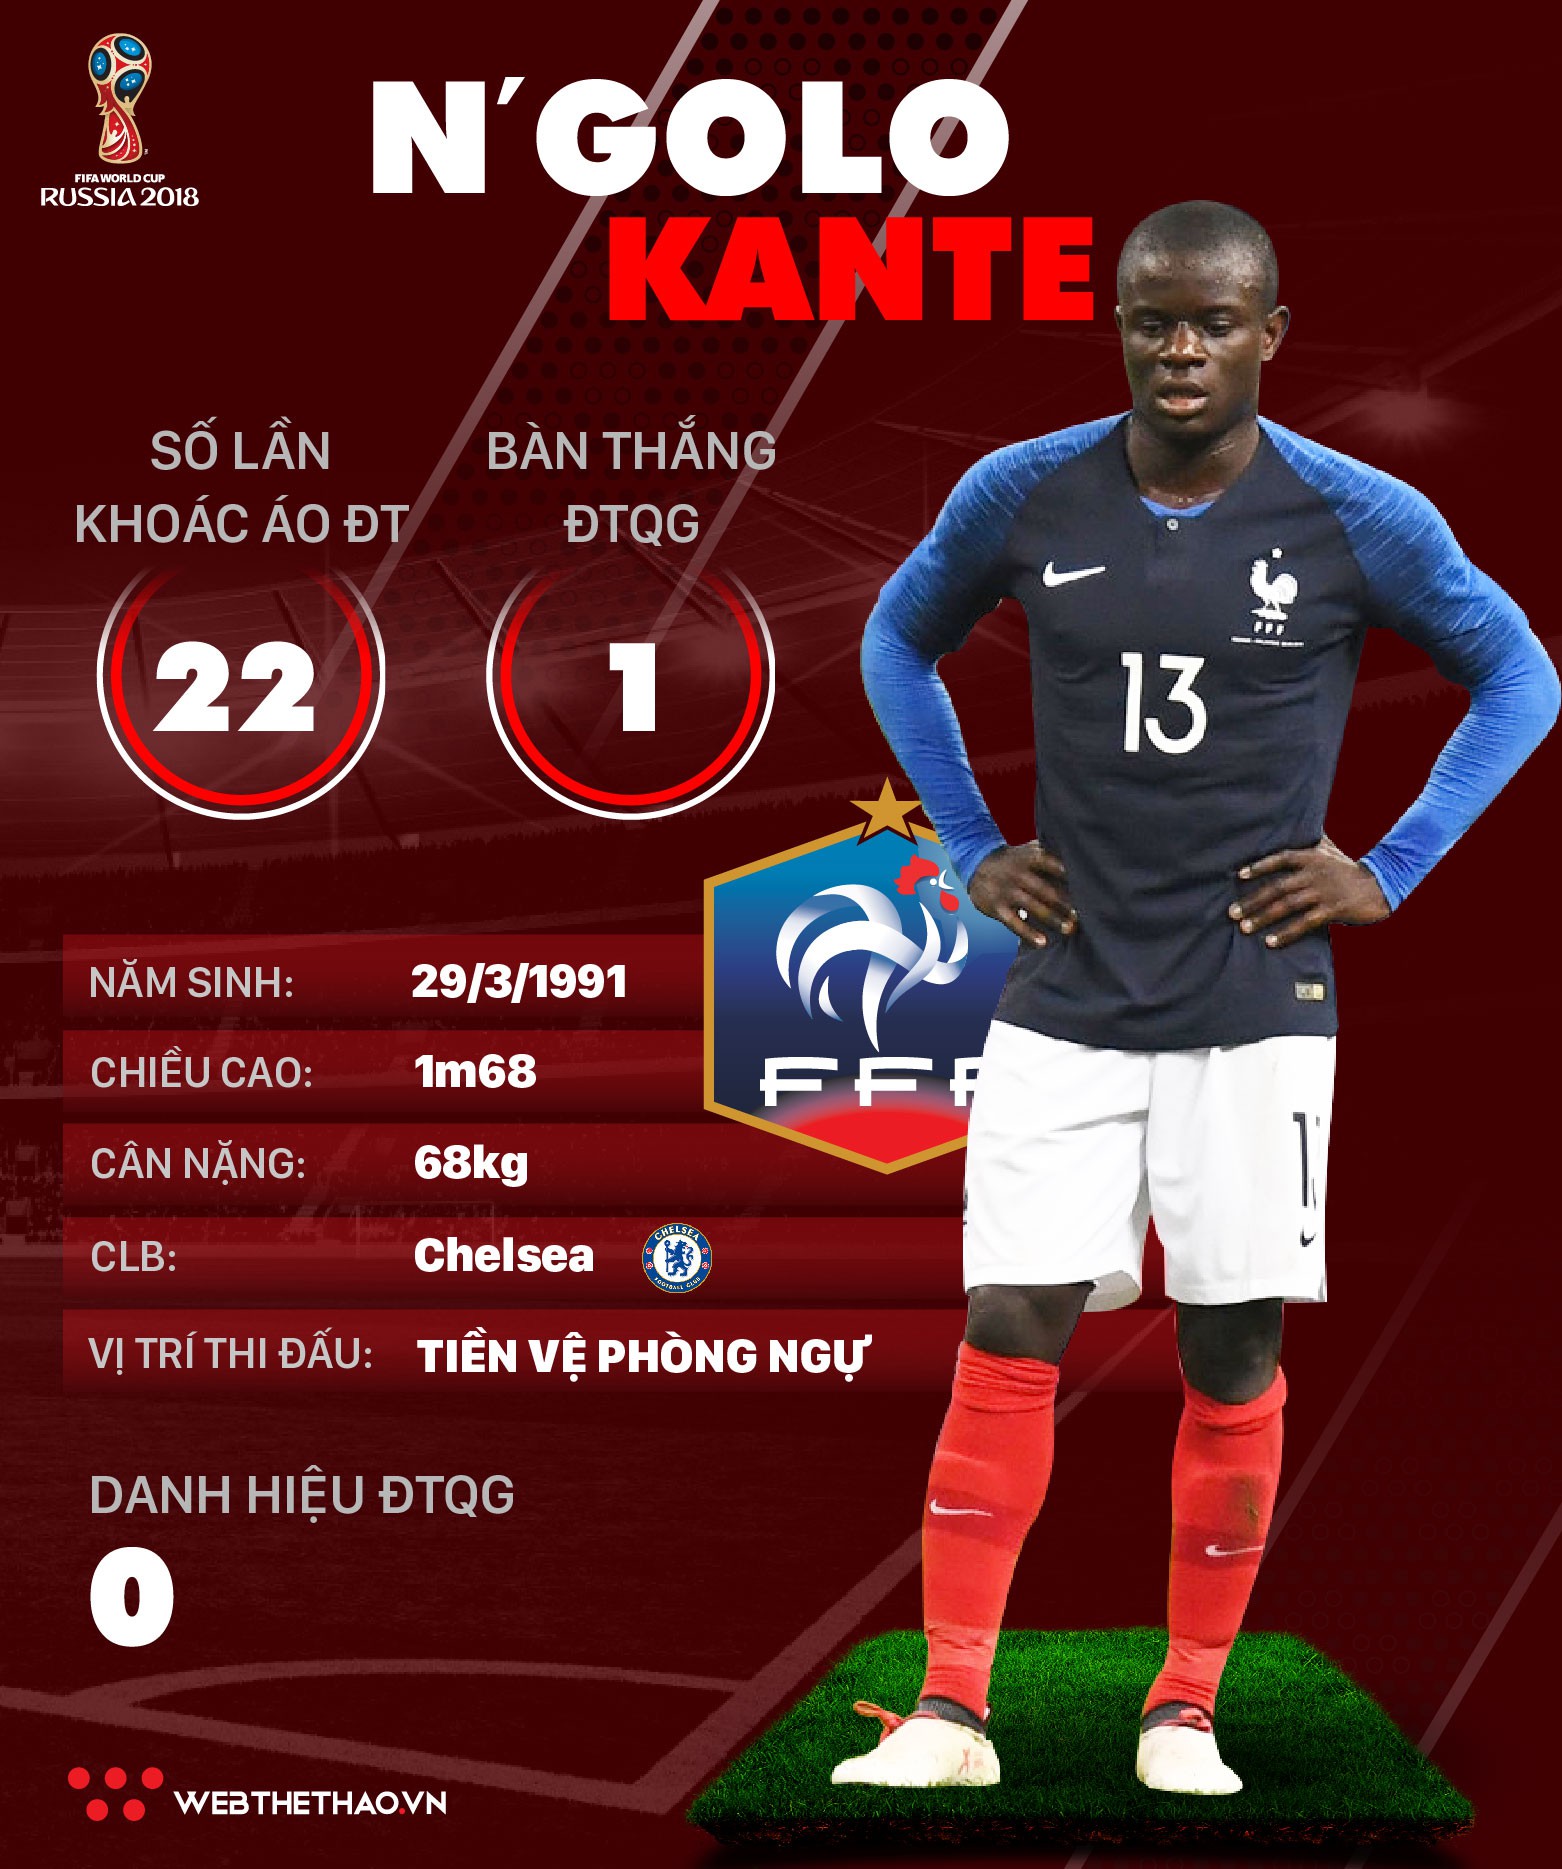 Thông tin cầu thủ NGolo Kante của ĐT Pháp dự World Cup 2018 - Ảnh 1.